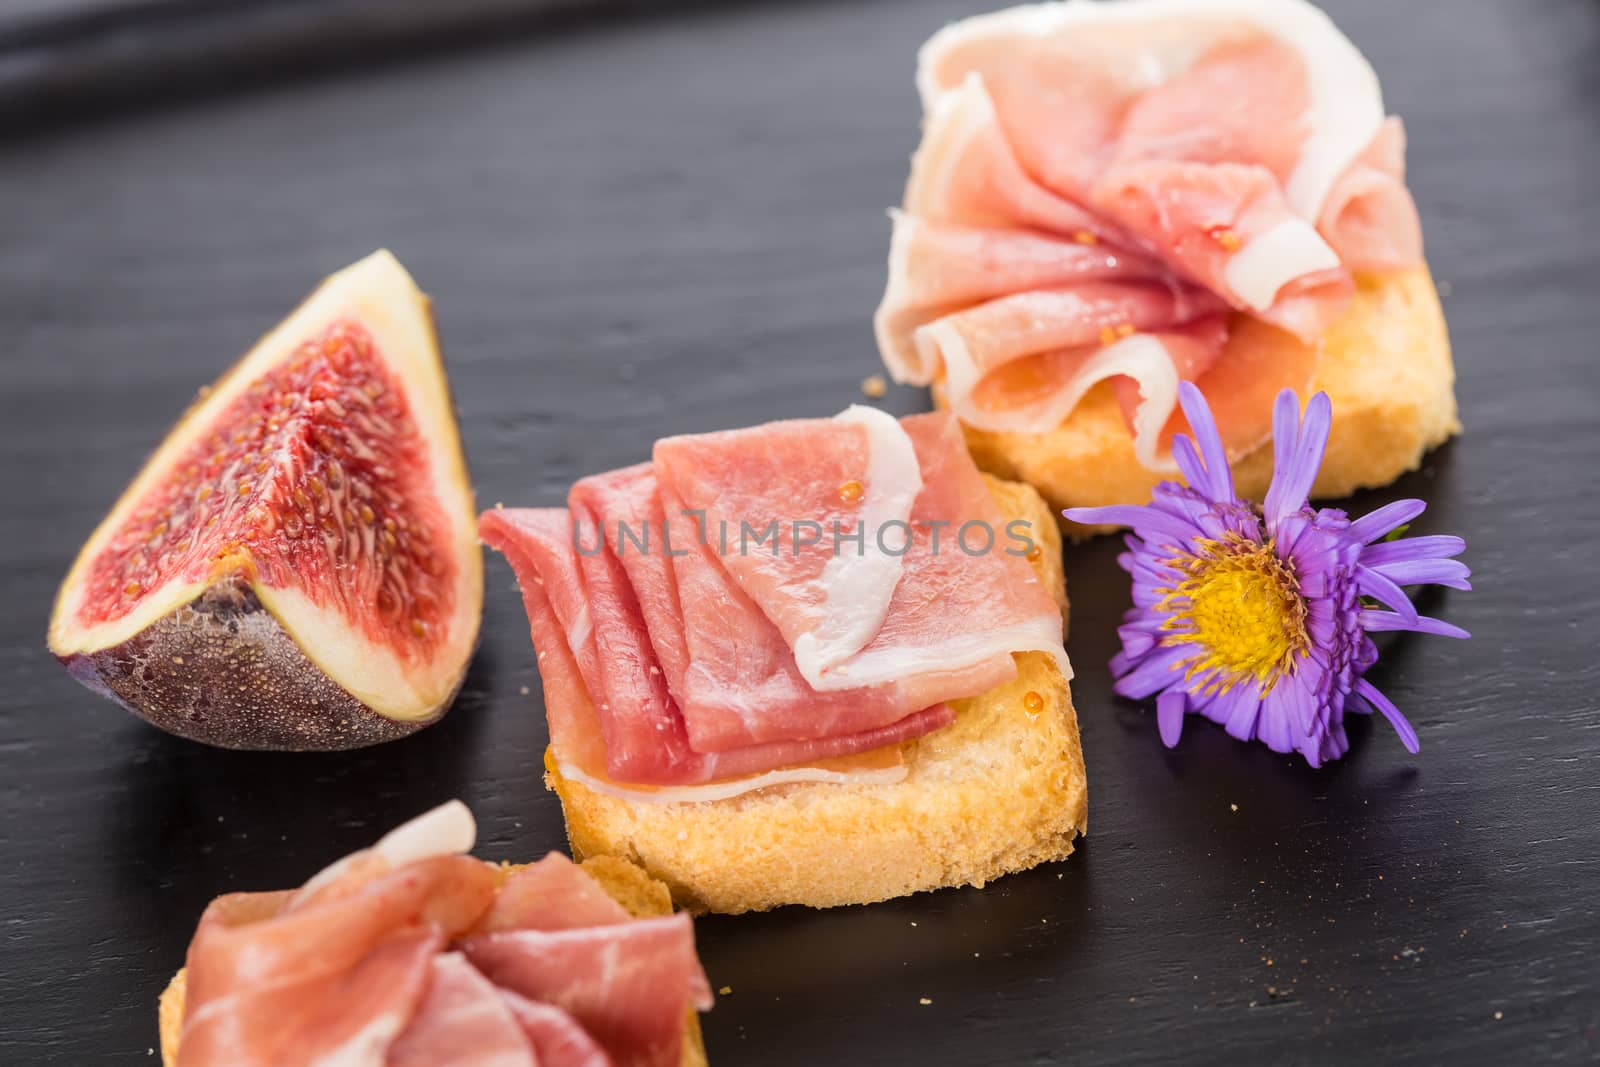 Slices of figs in Prosciutto Italian cured ham